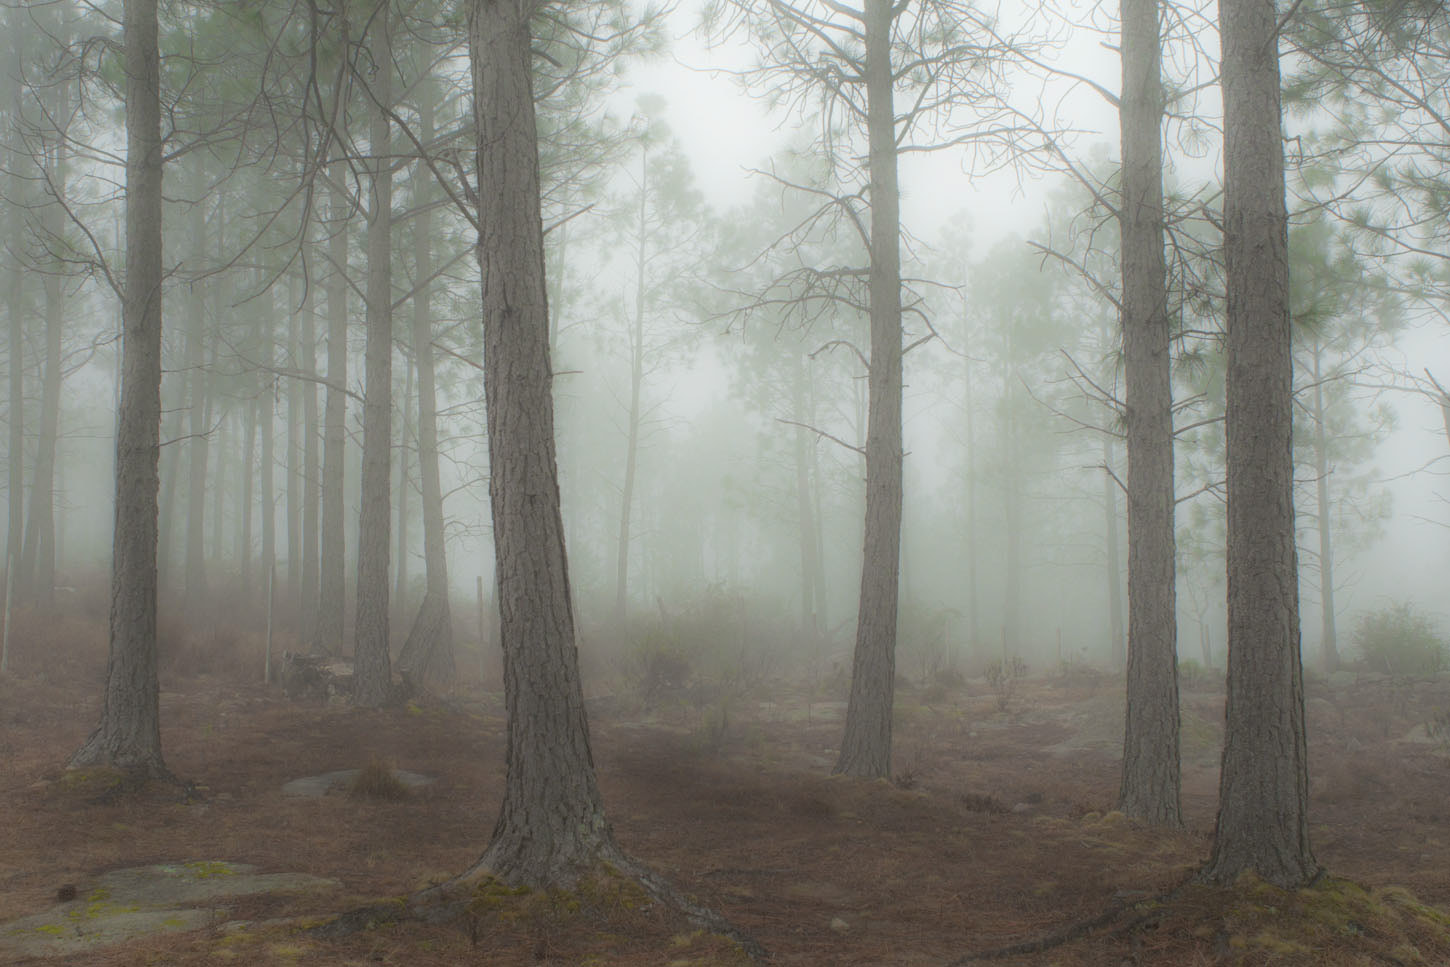 Nikon D90 + AF Nikkor 24mm f/2.8 sample photo. Niebla de bosque. córdoba, argentina. photography